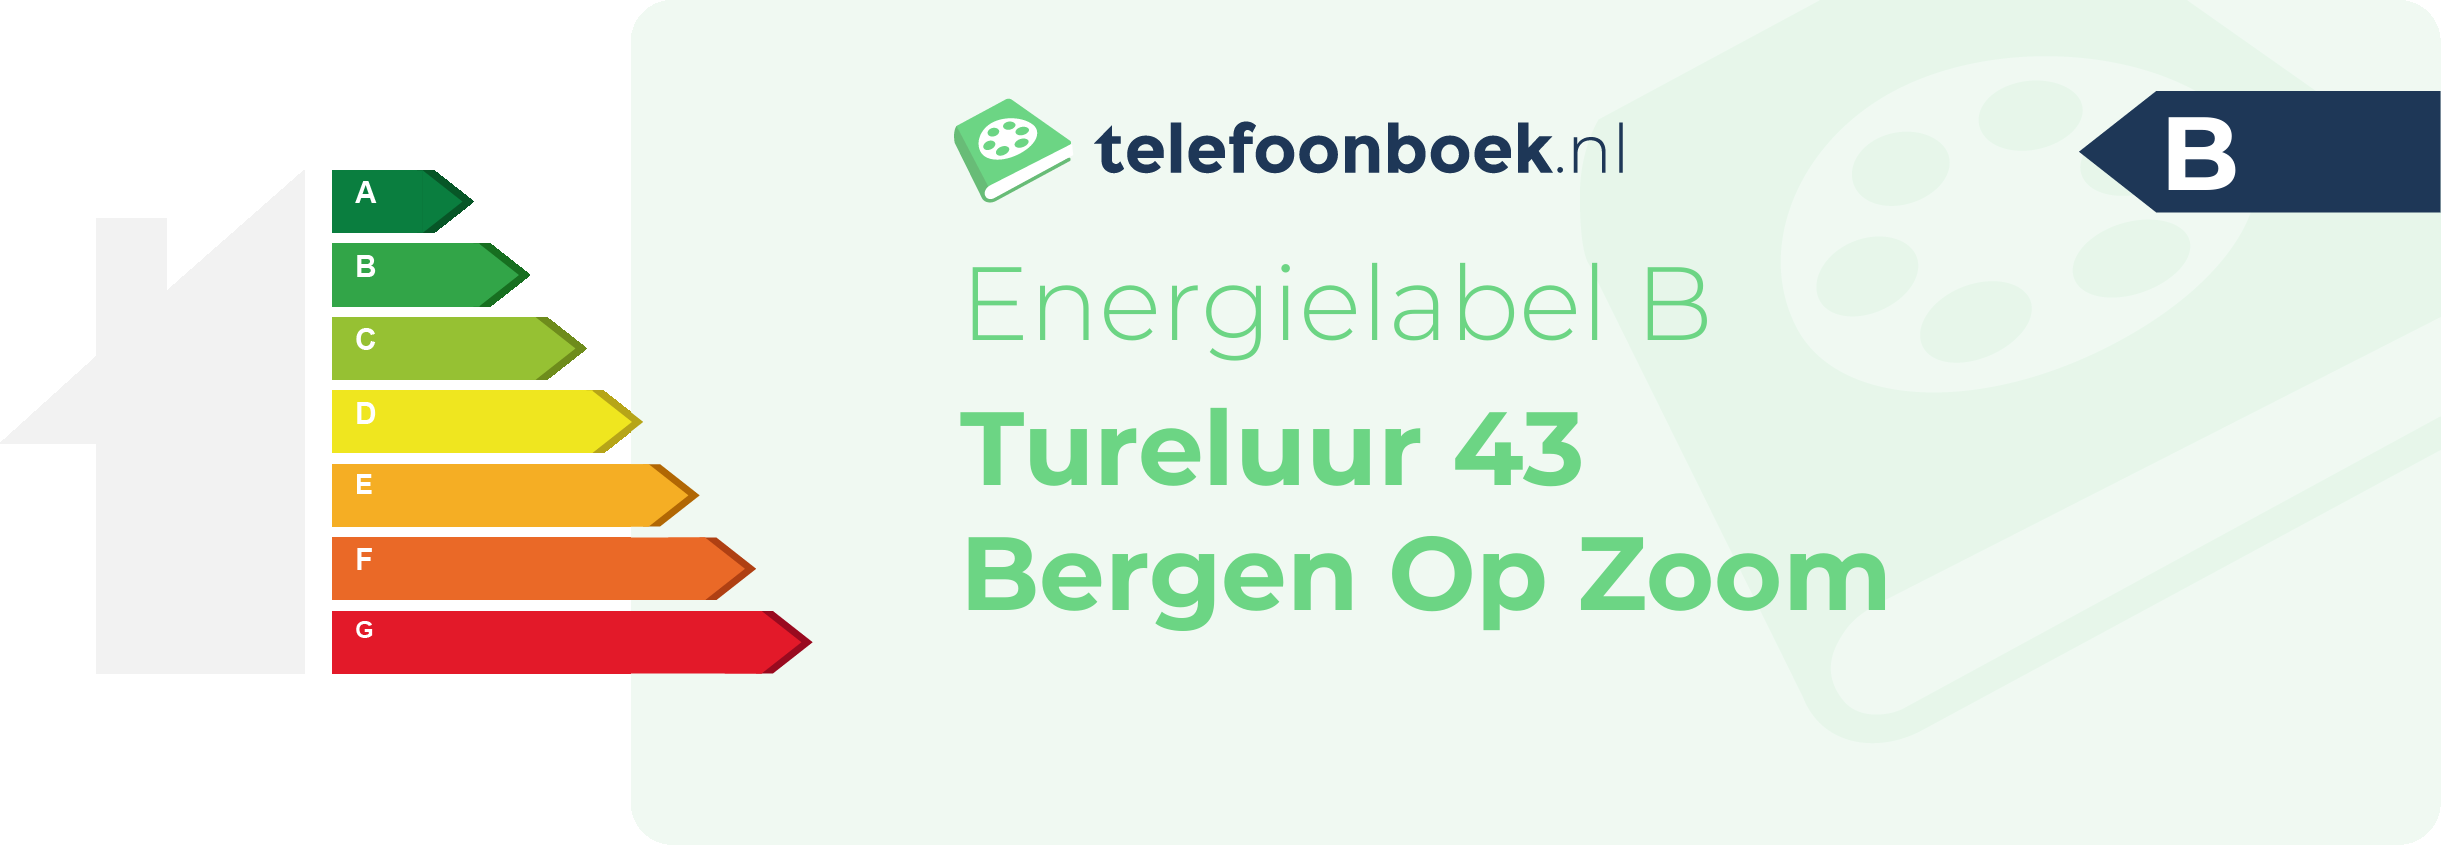 Energielabel Tureluur 43 Bergen Op Zoom